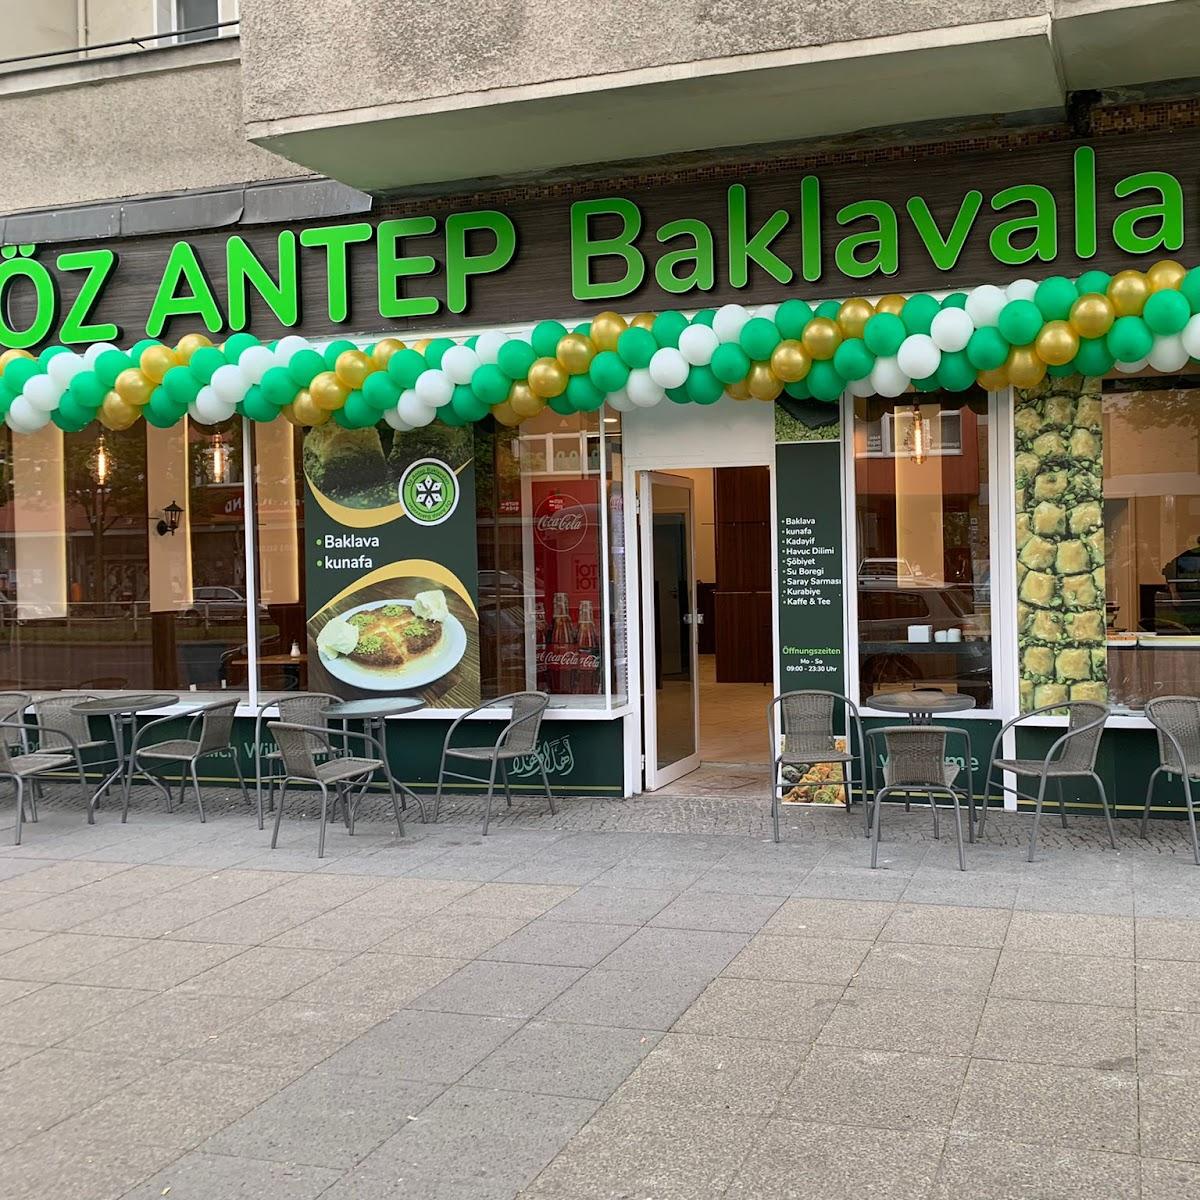 Restaurant "Künefe Ülkem Öz Antep baklavari" in Berlin